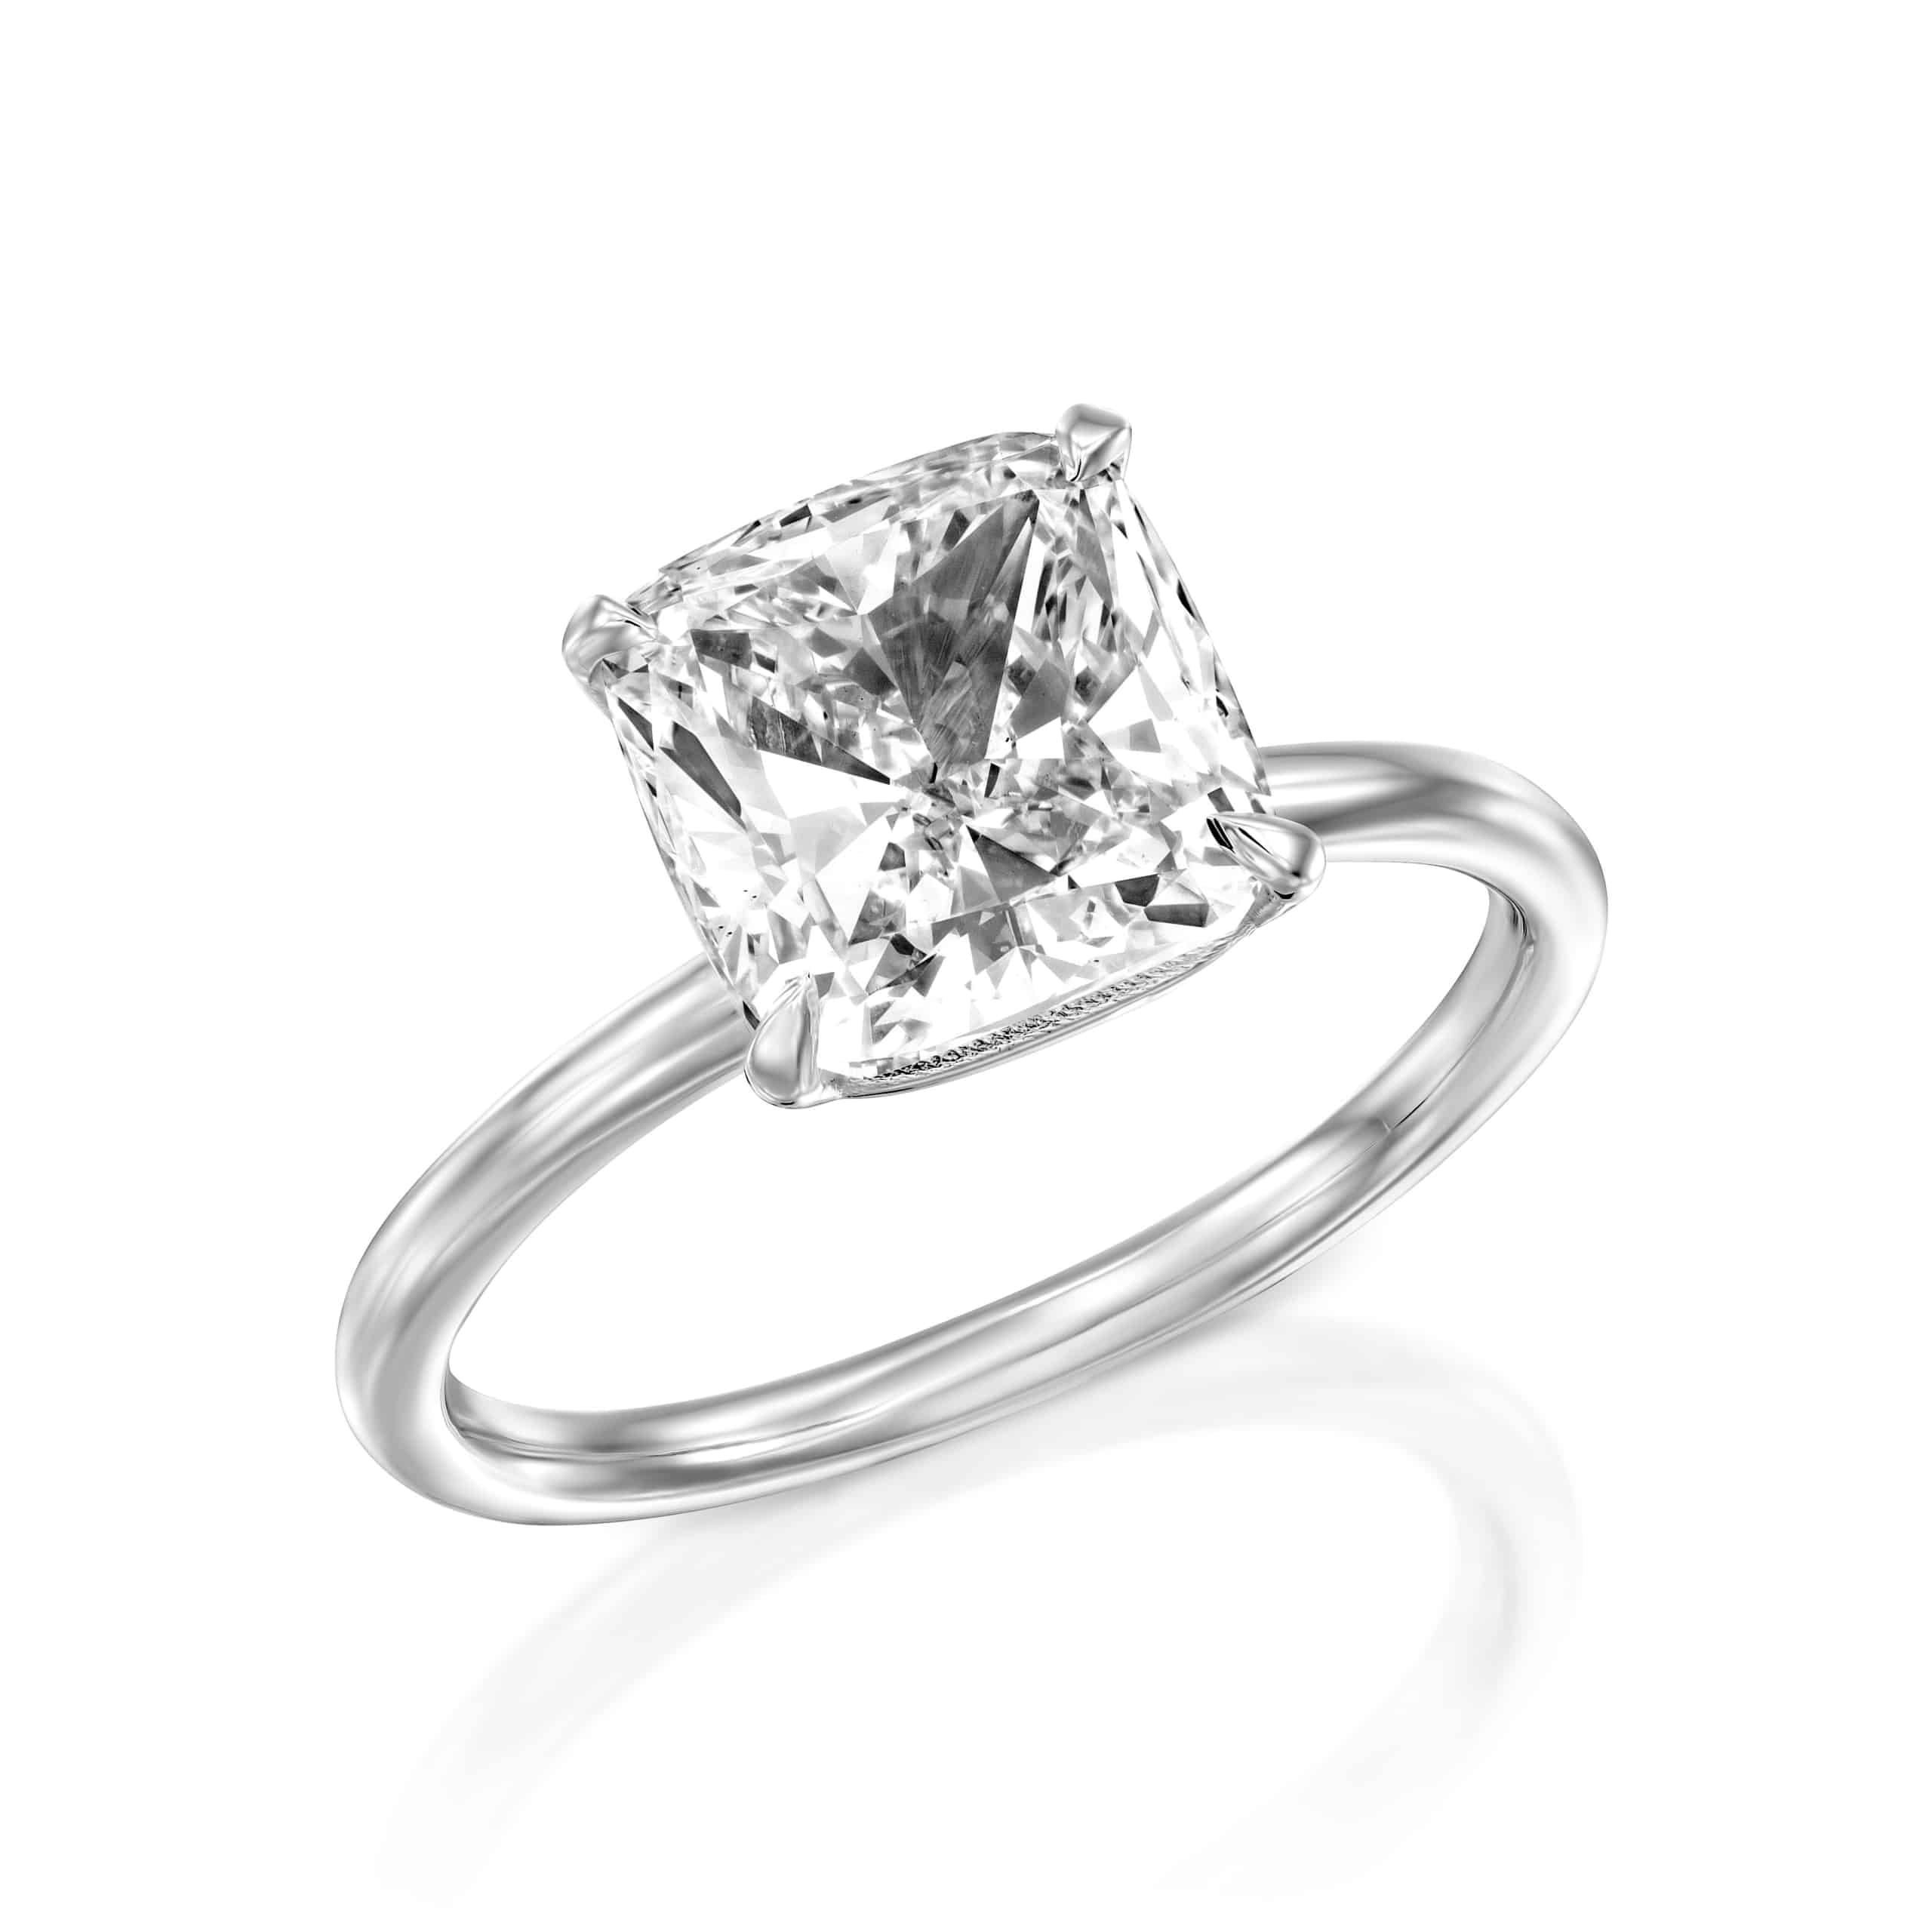 טבעת אירוסין יהלום בחיתוך נסיכת סוליטר על רצועת כסף אלגנטית, מבודדת על רקע לבן.